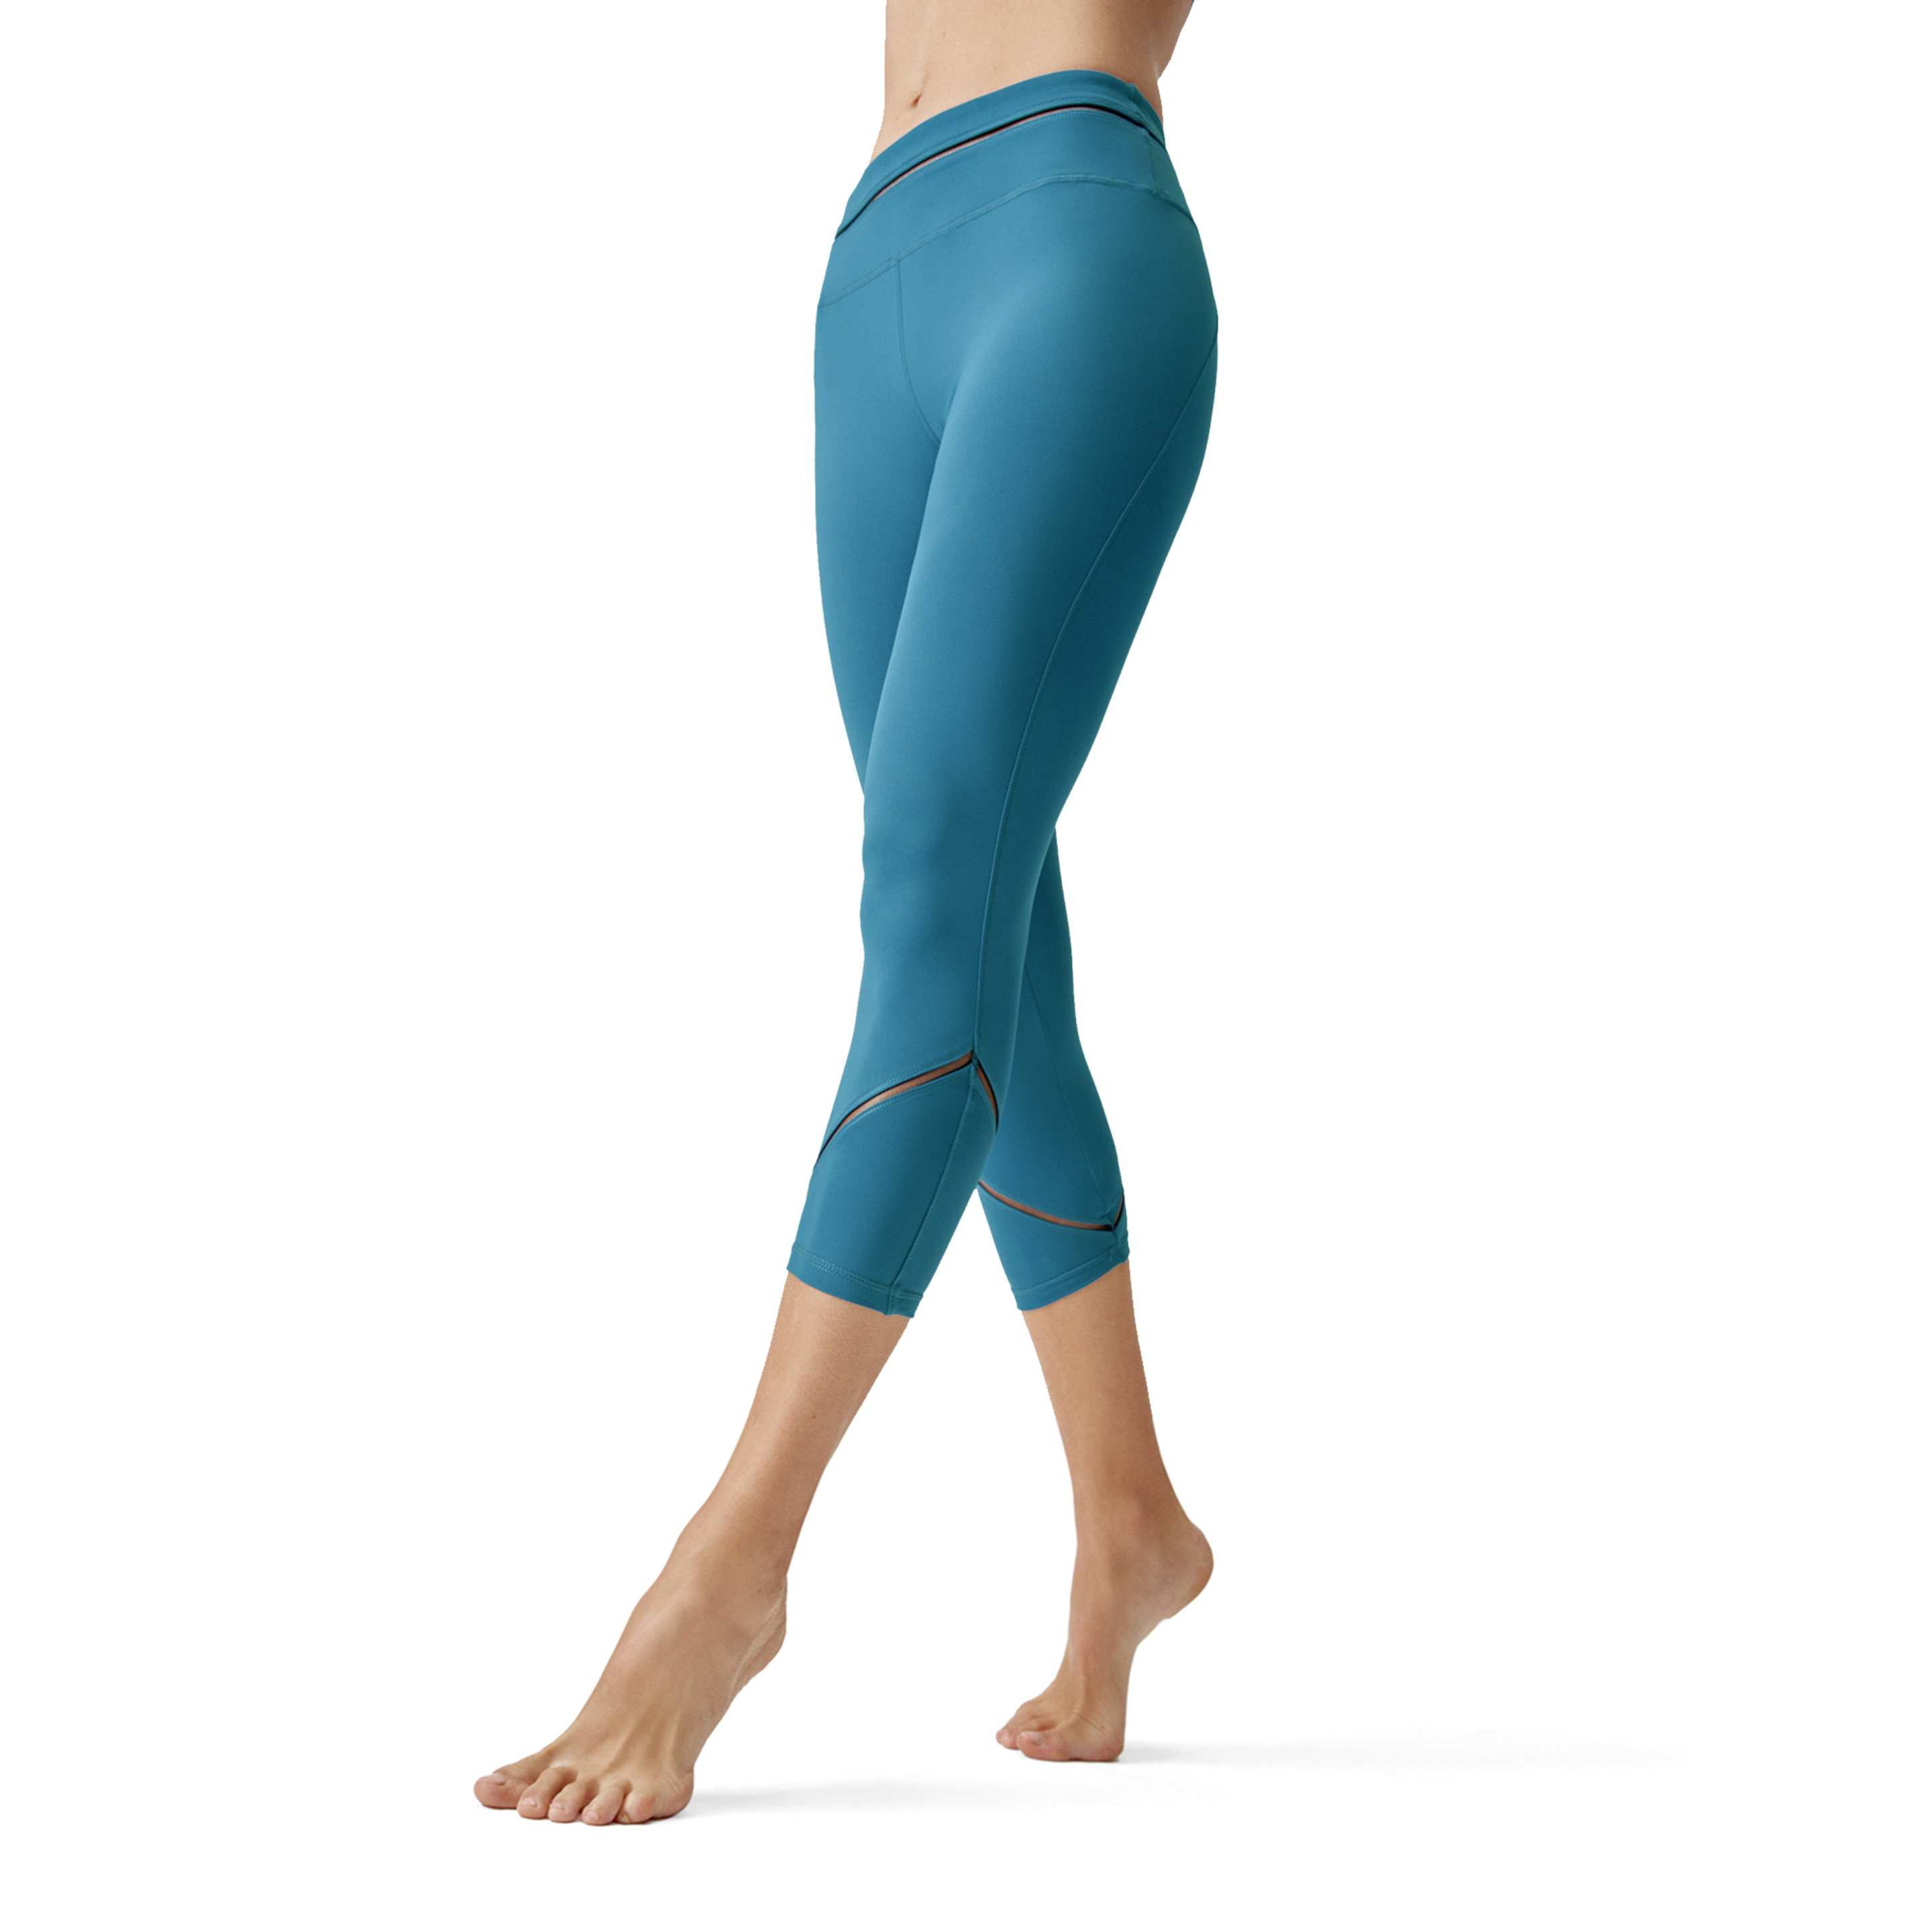 Legging Born Living Yoga Tamar - azul - 